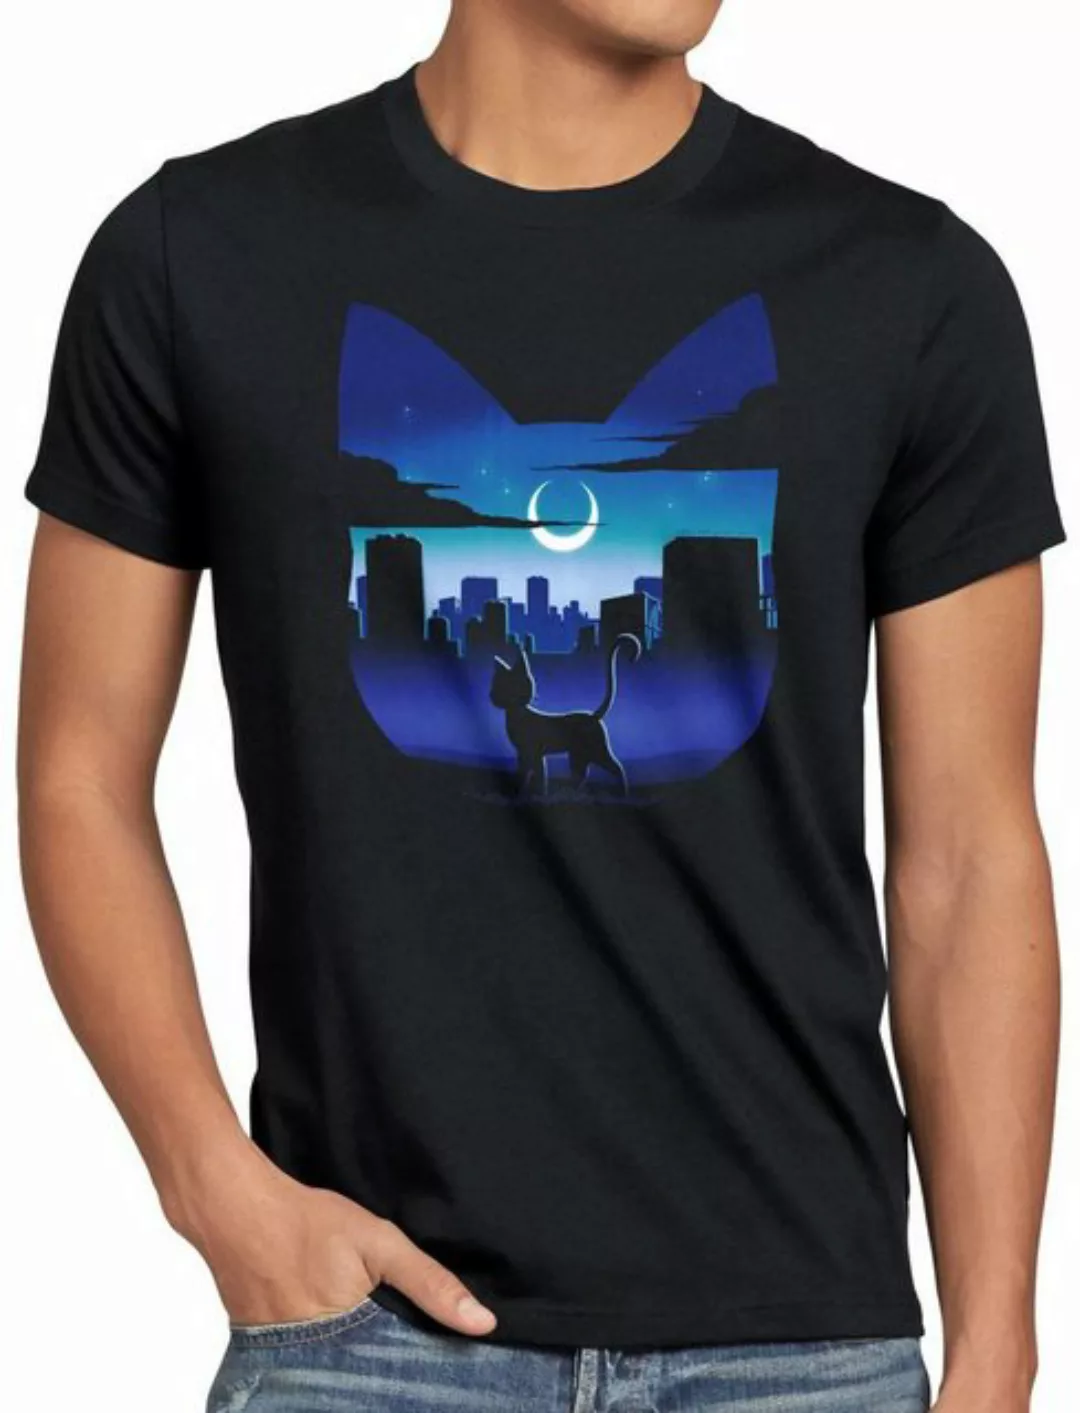 style3 Print-Shirt Herren T-Shirt Luna moon mondstein japan sailor günstig online kaufen